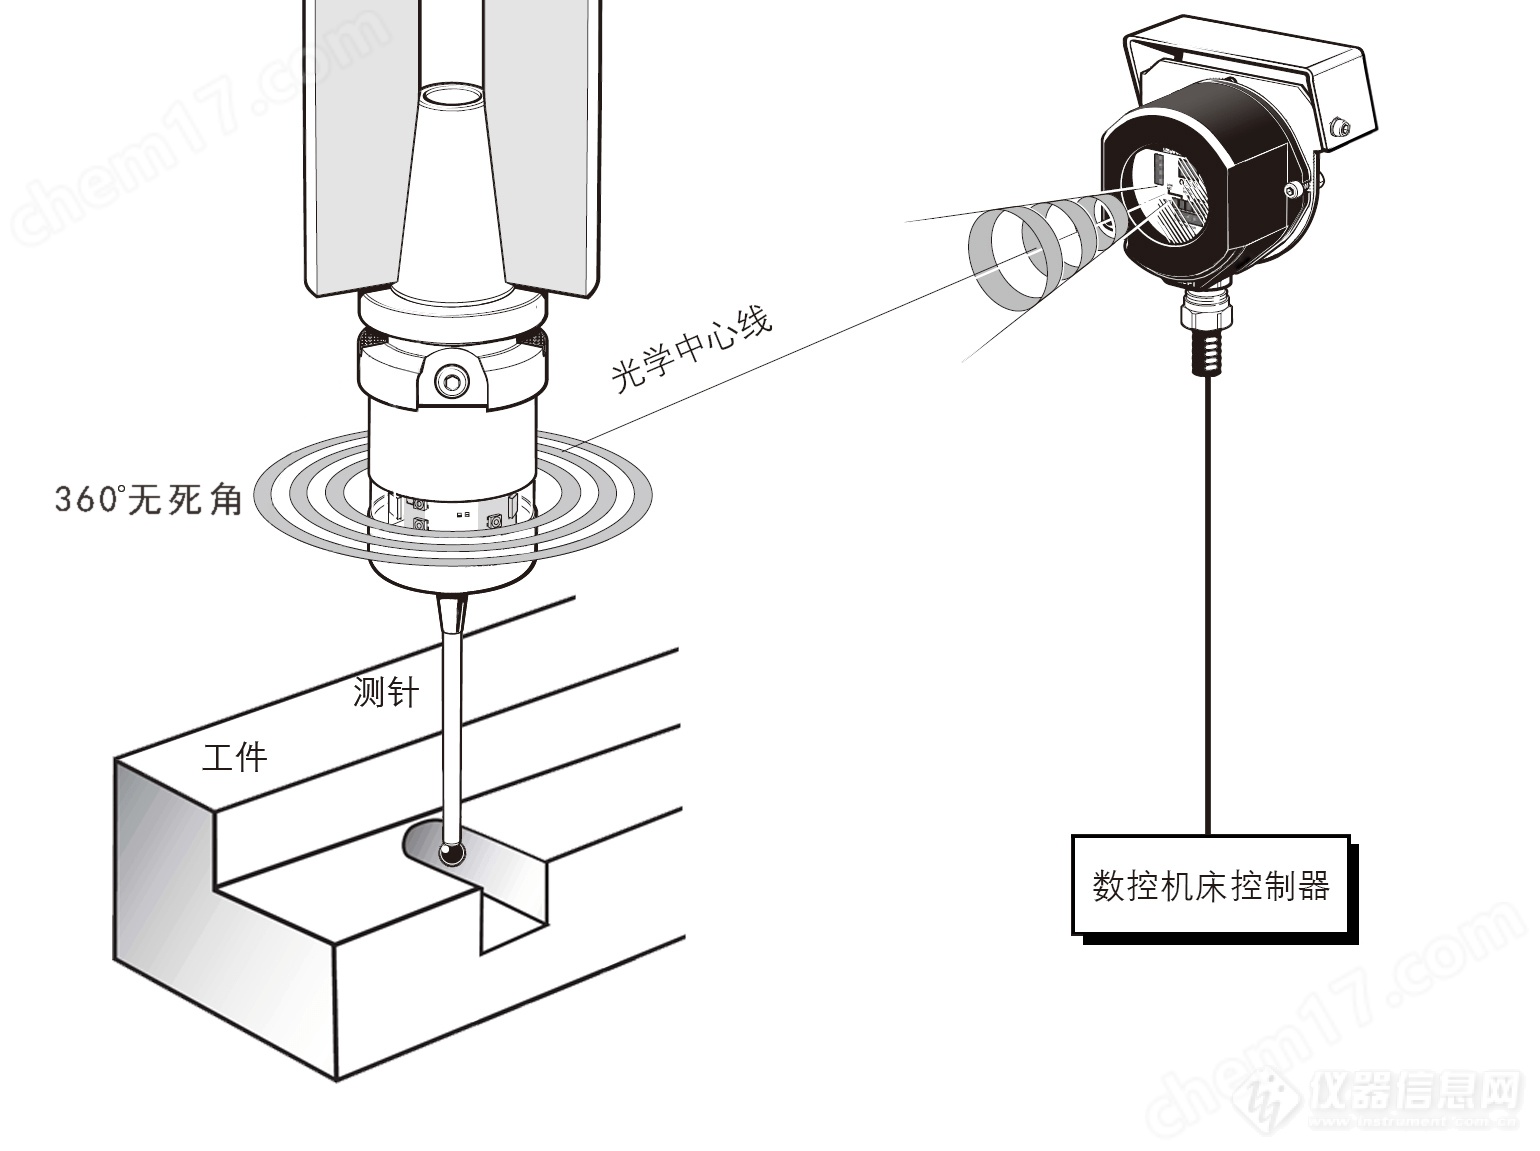 中图仪器CNC加工机床测头